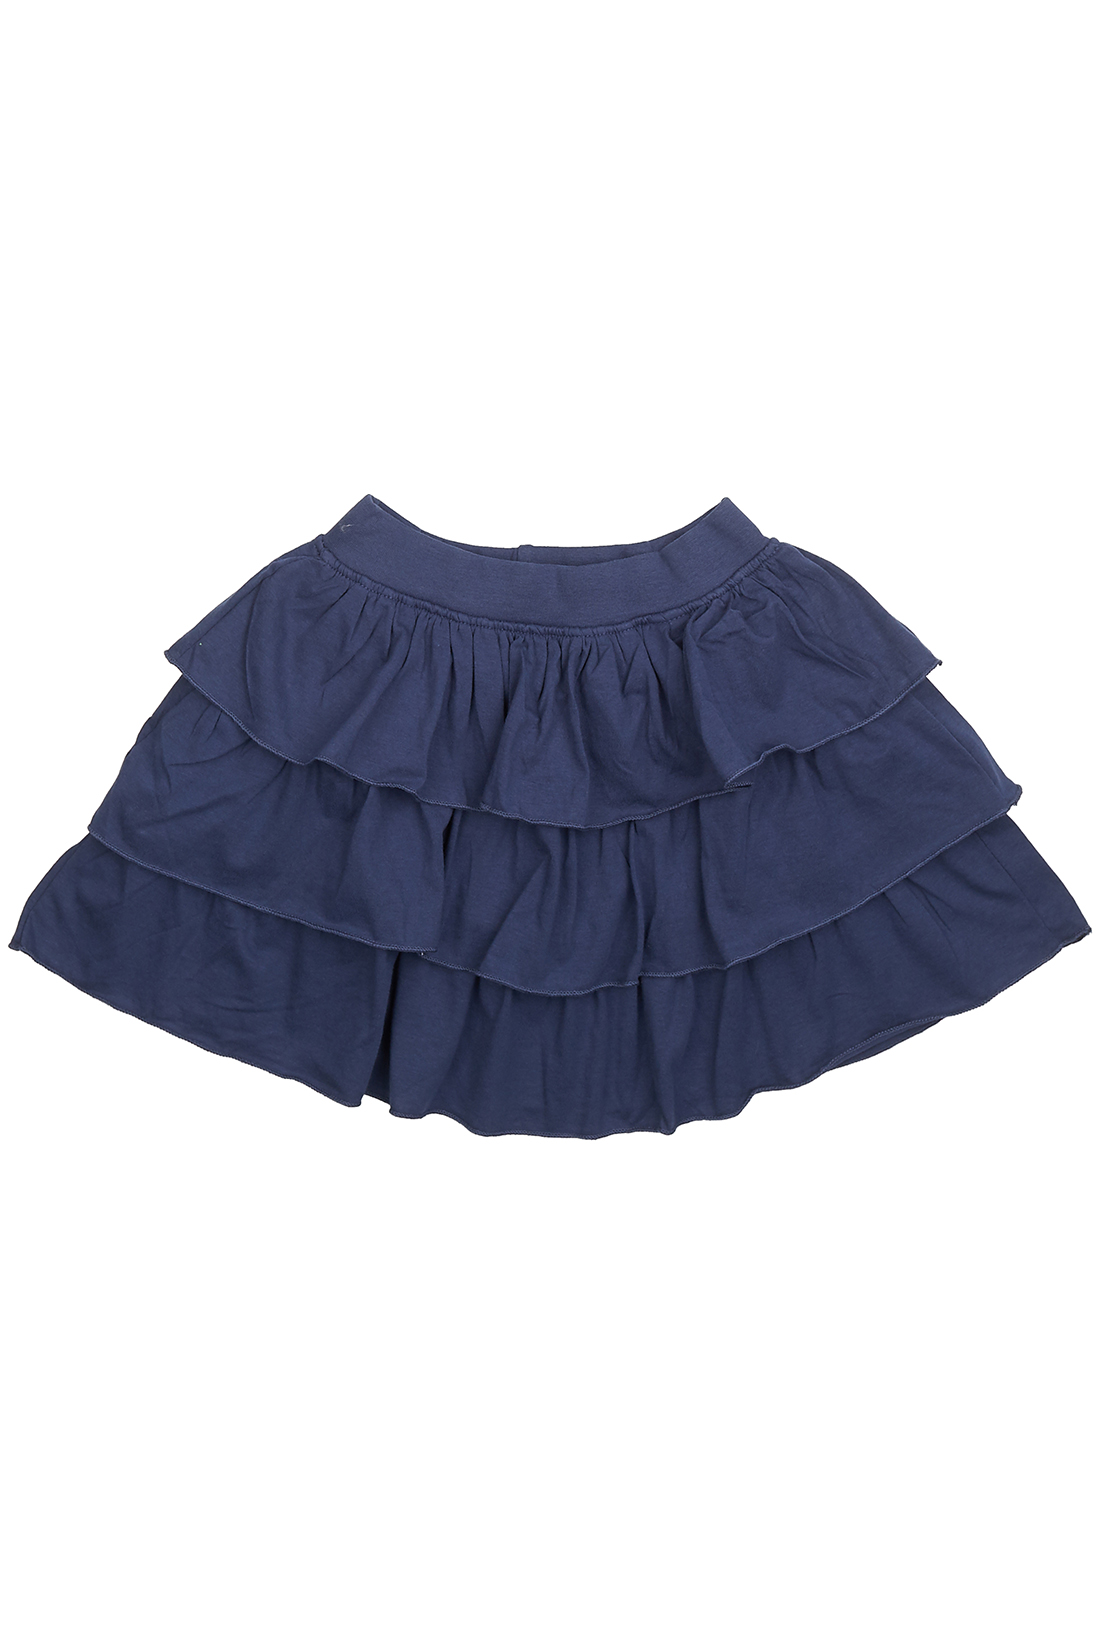 Юбка для девочки (арт. baon BK478004), размер 98-104, цвет синий Юбка для девочки (арт. baon BK478004) - фото 4